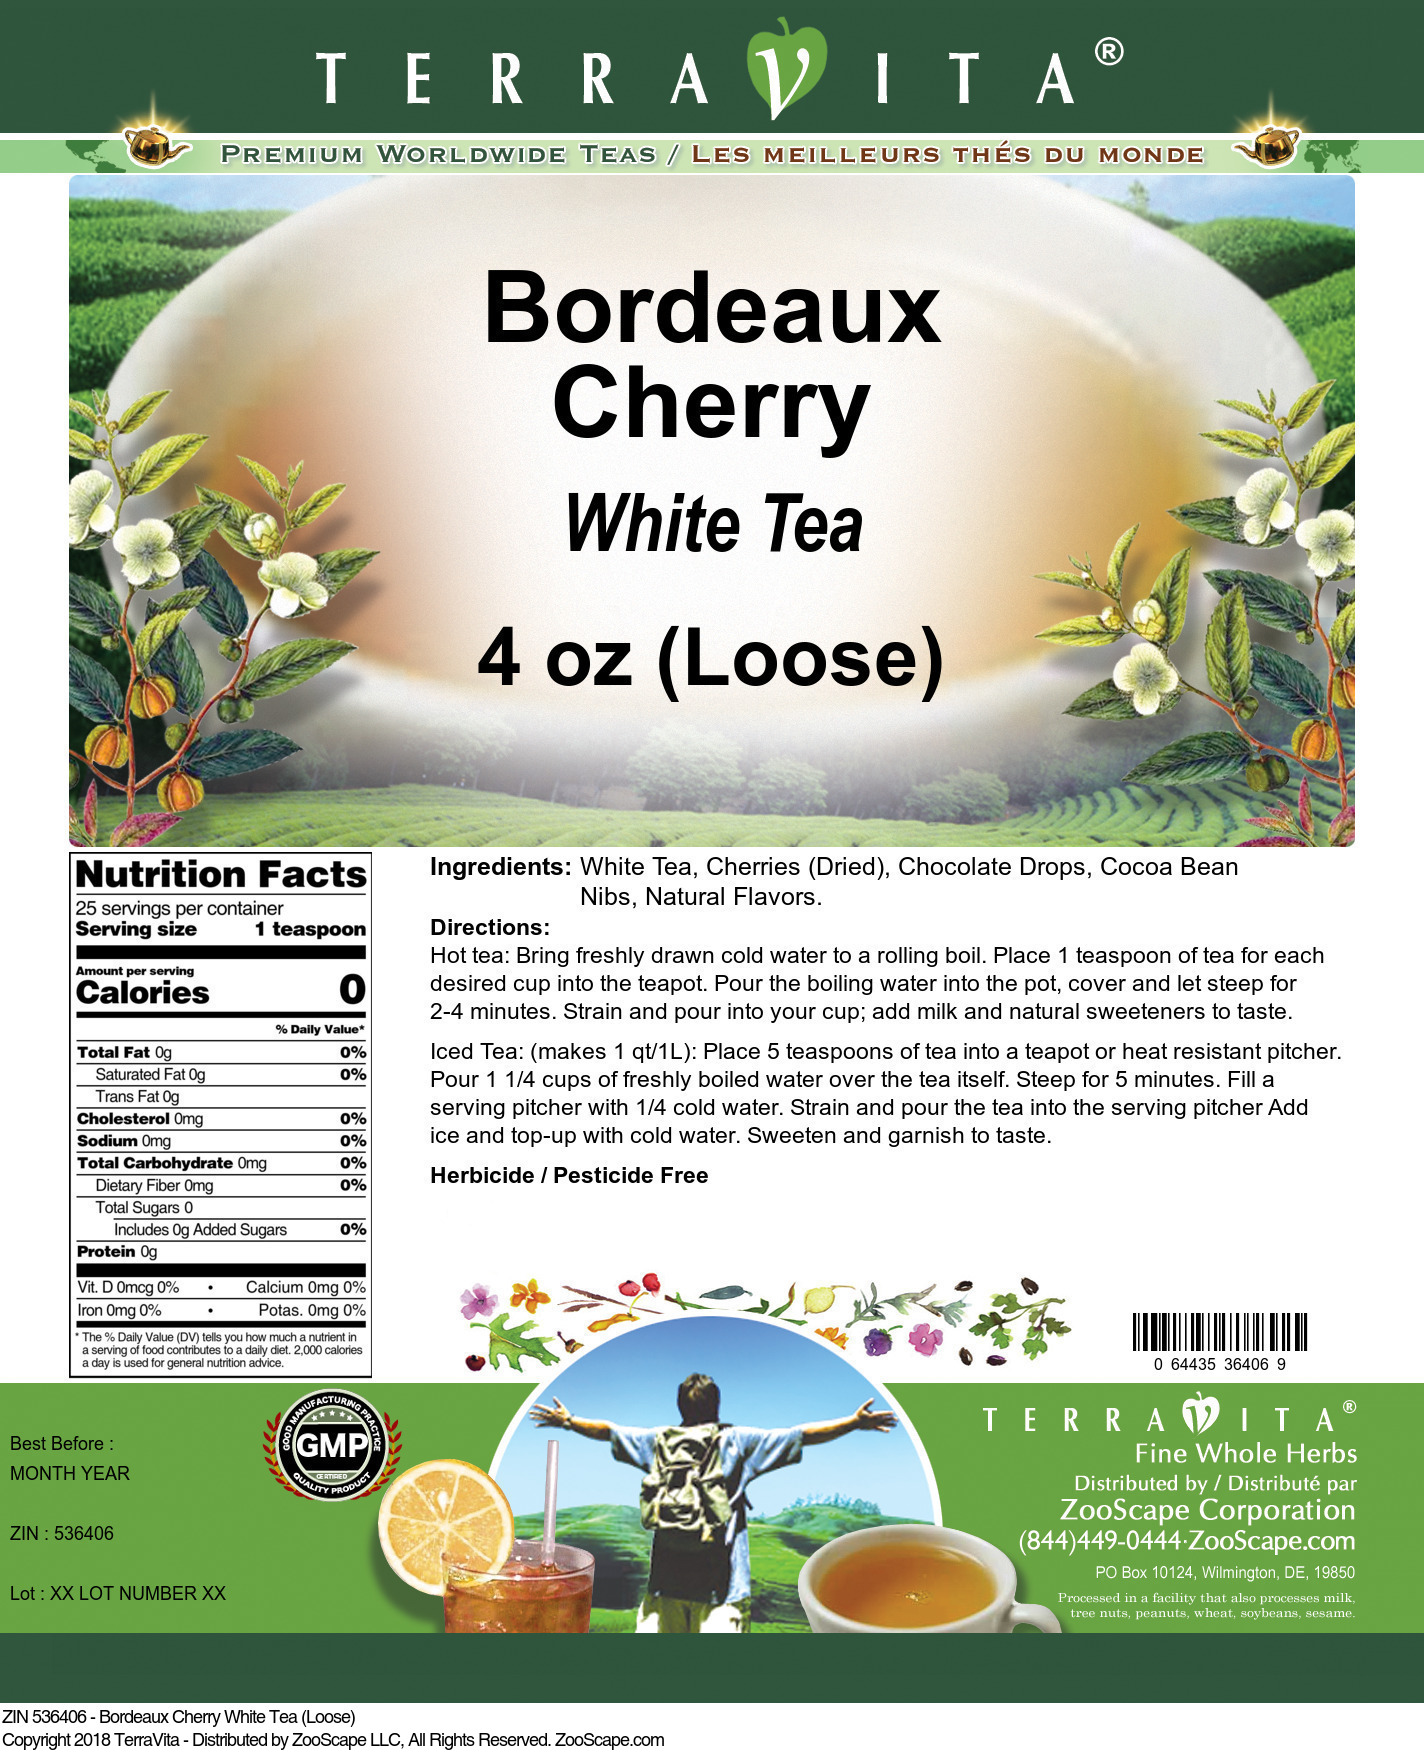 Bordeaux Cherry White Tea (Loose) - Label